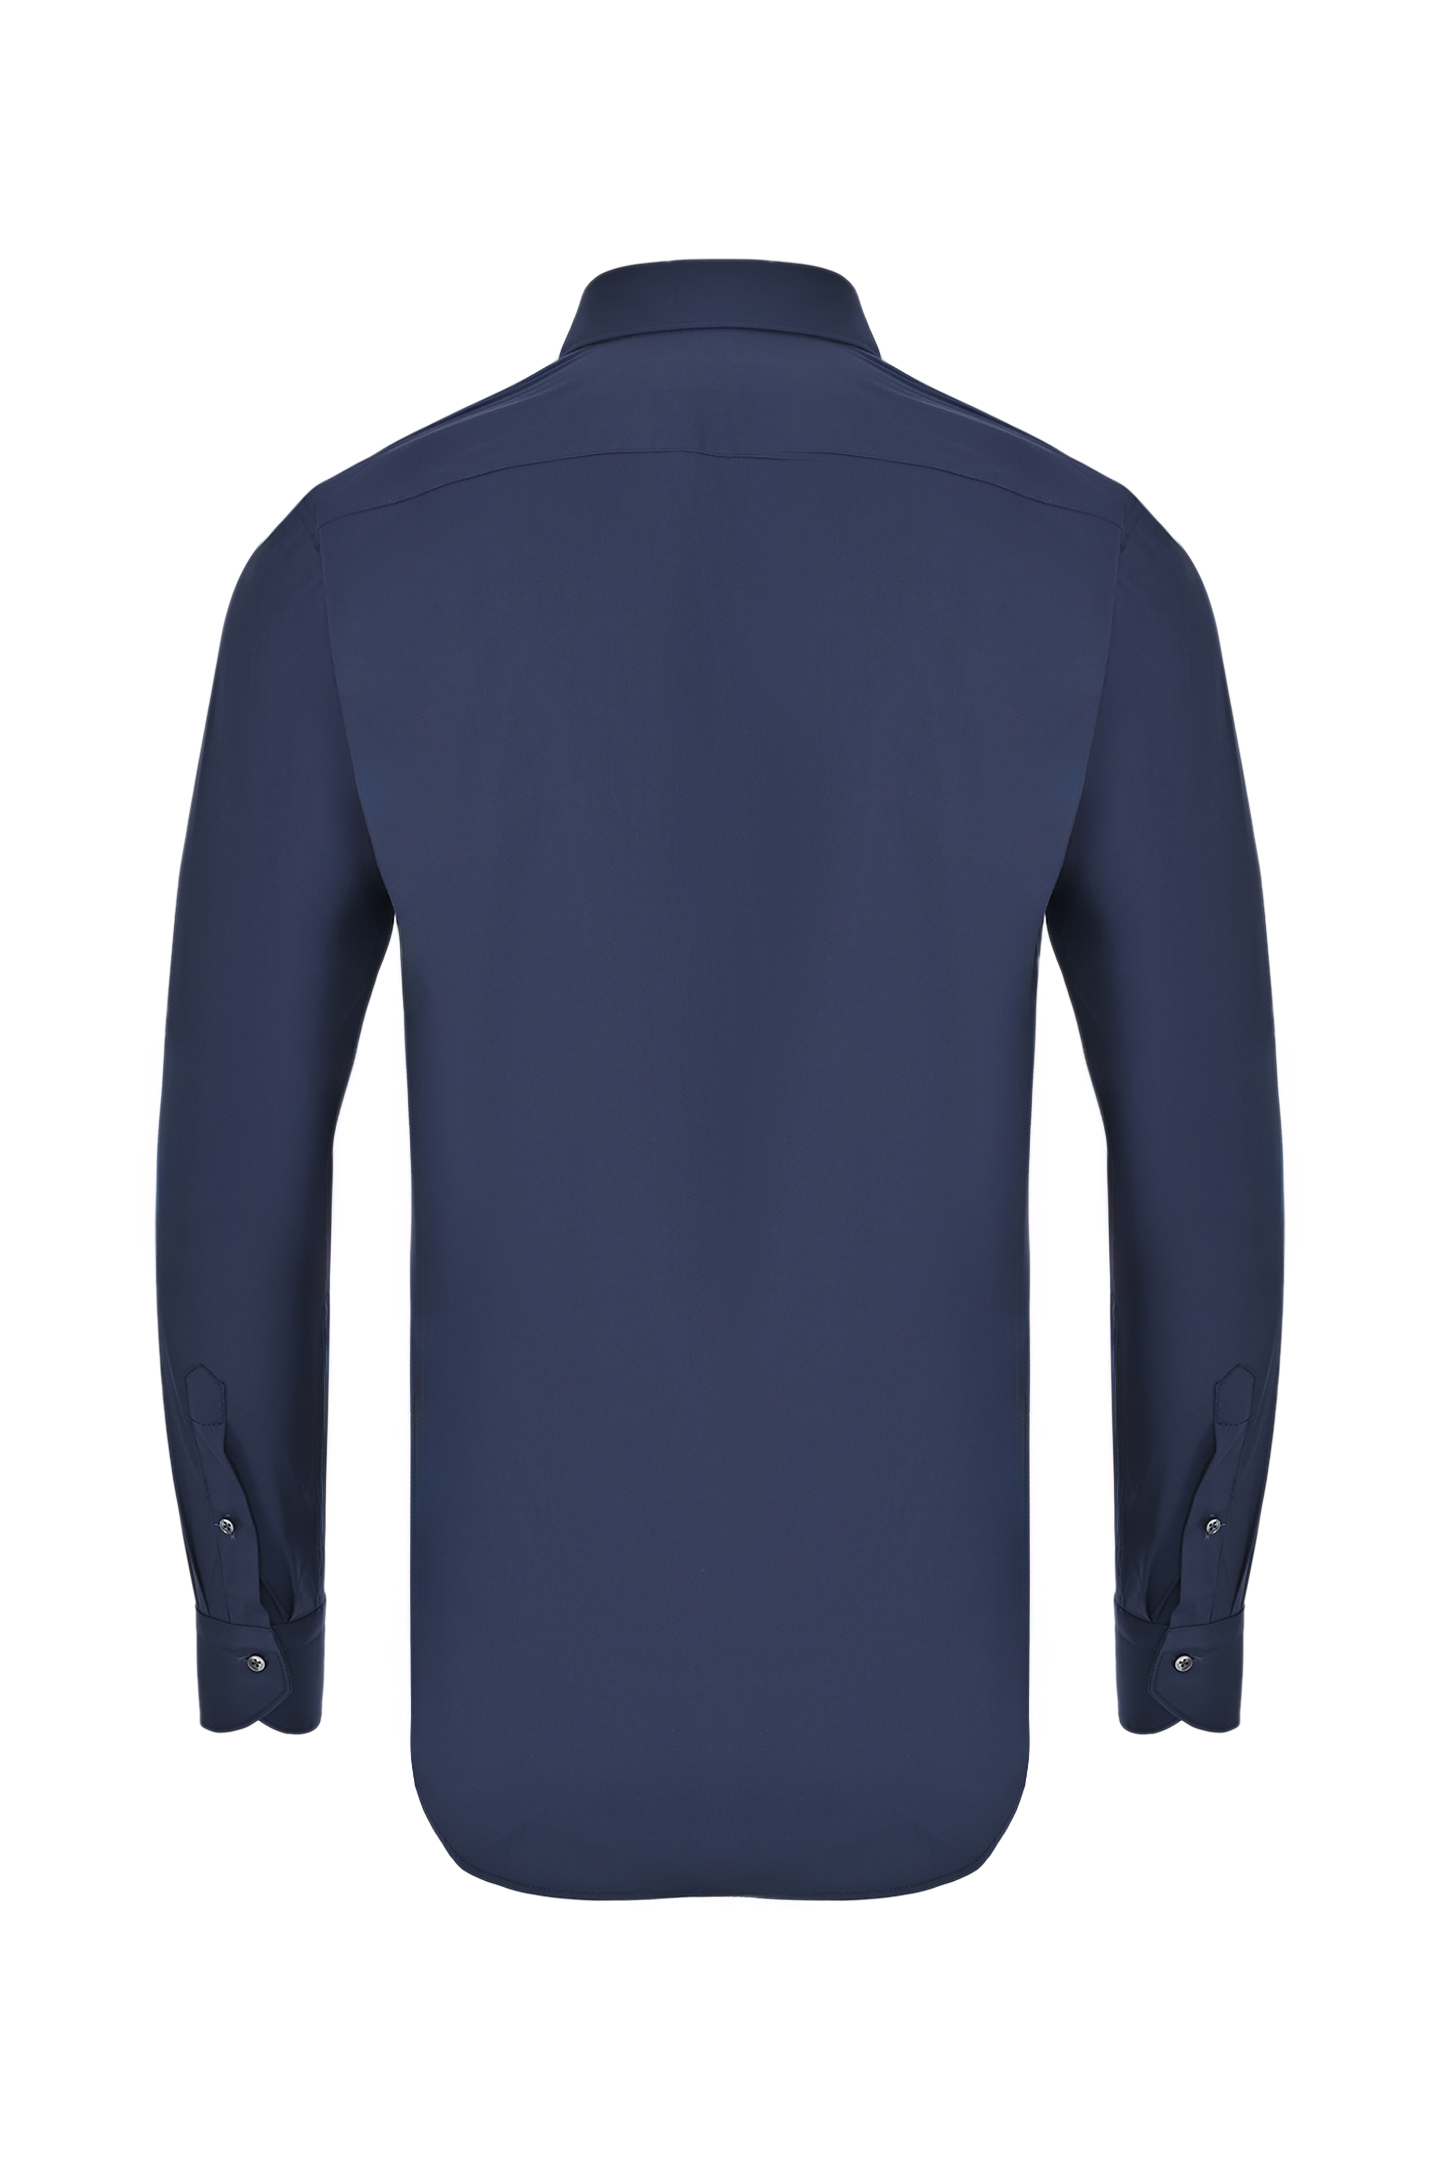 Рубашка из хлопка и эластана CANALI GA01222 7C3/1, цвет: Темно-синий, Мужской